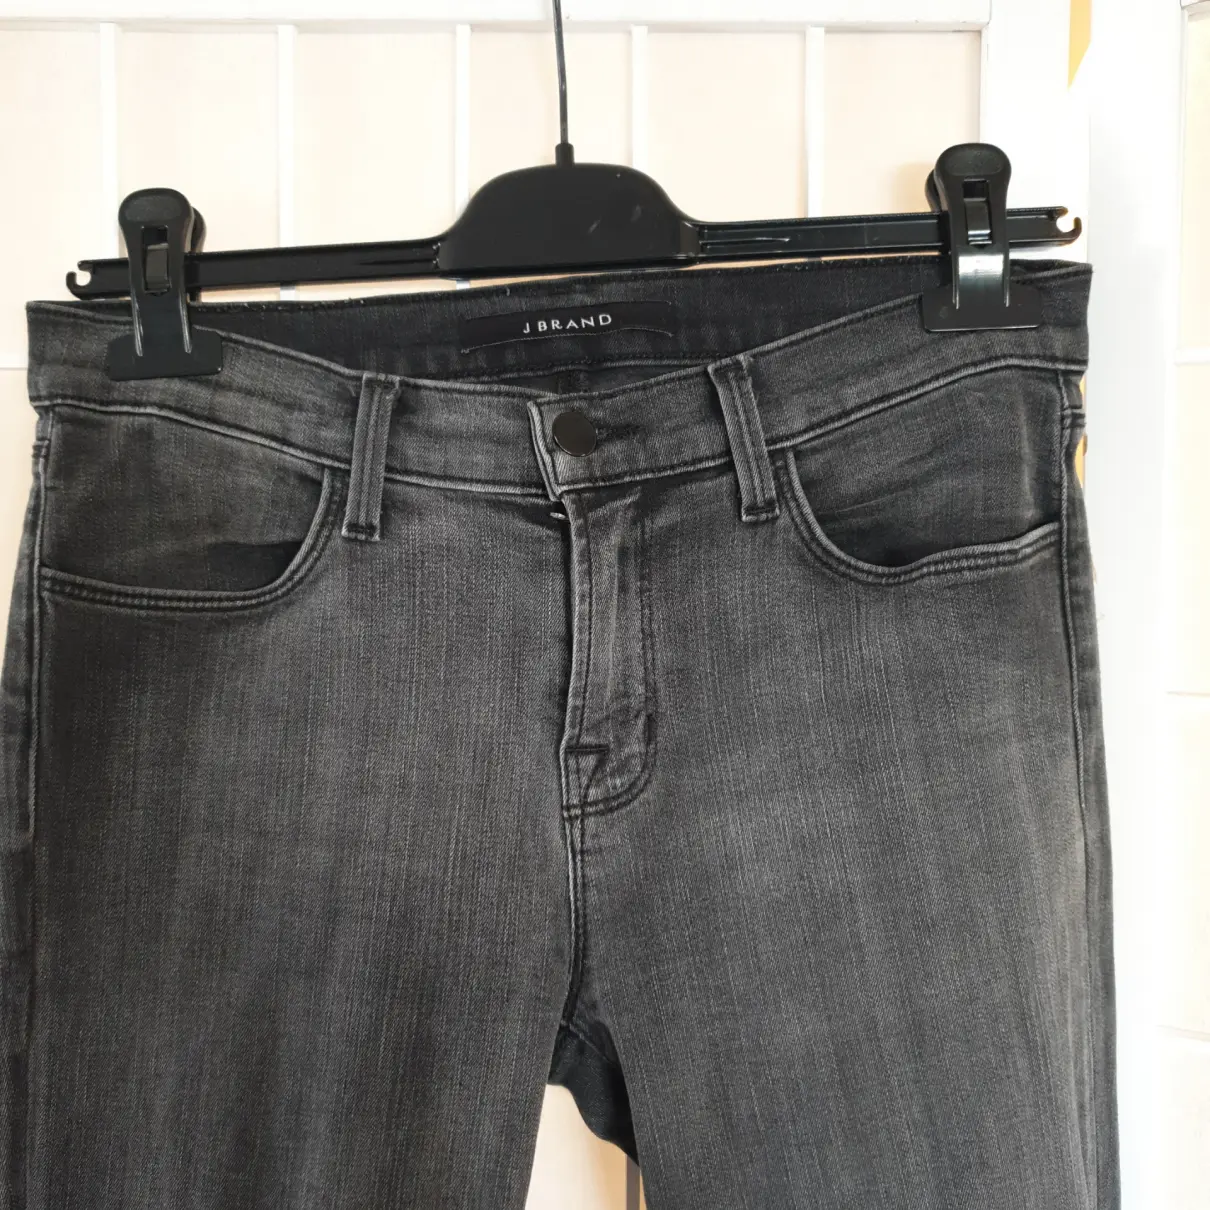 Buy J Brand Slim pants online